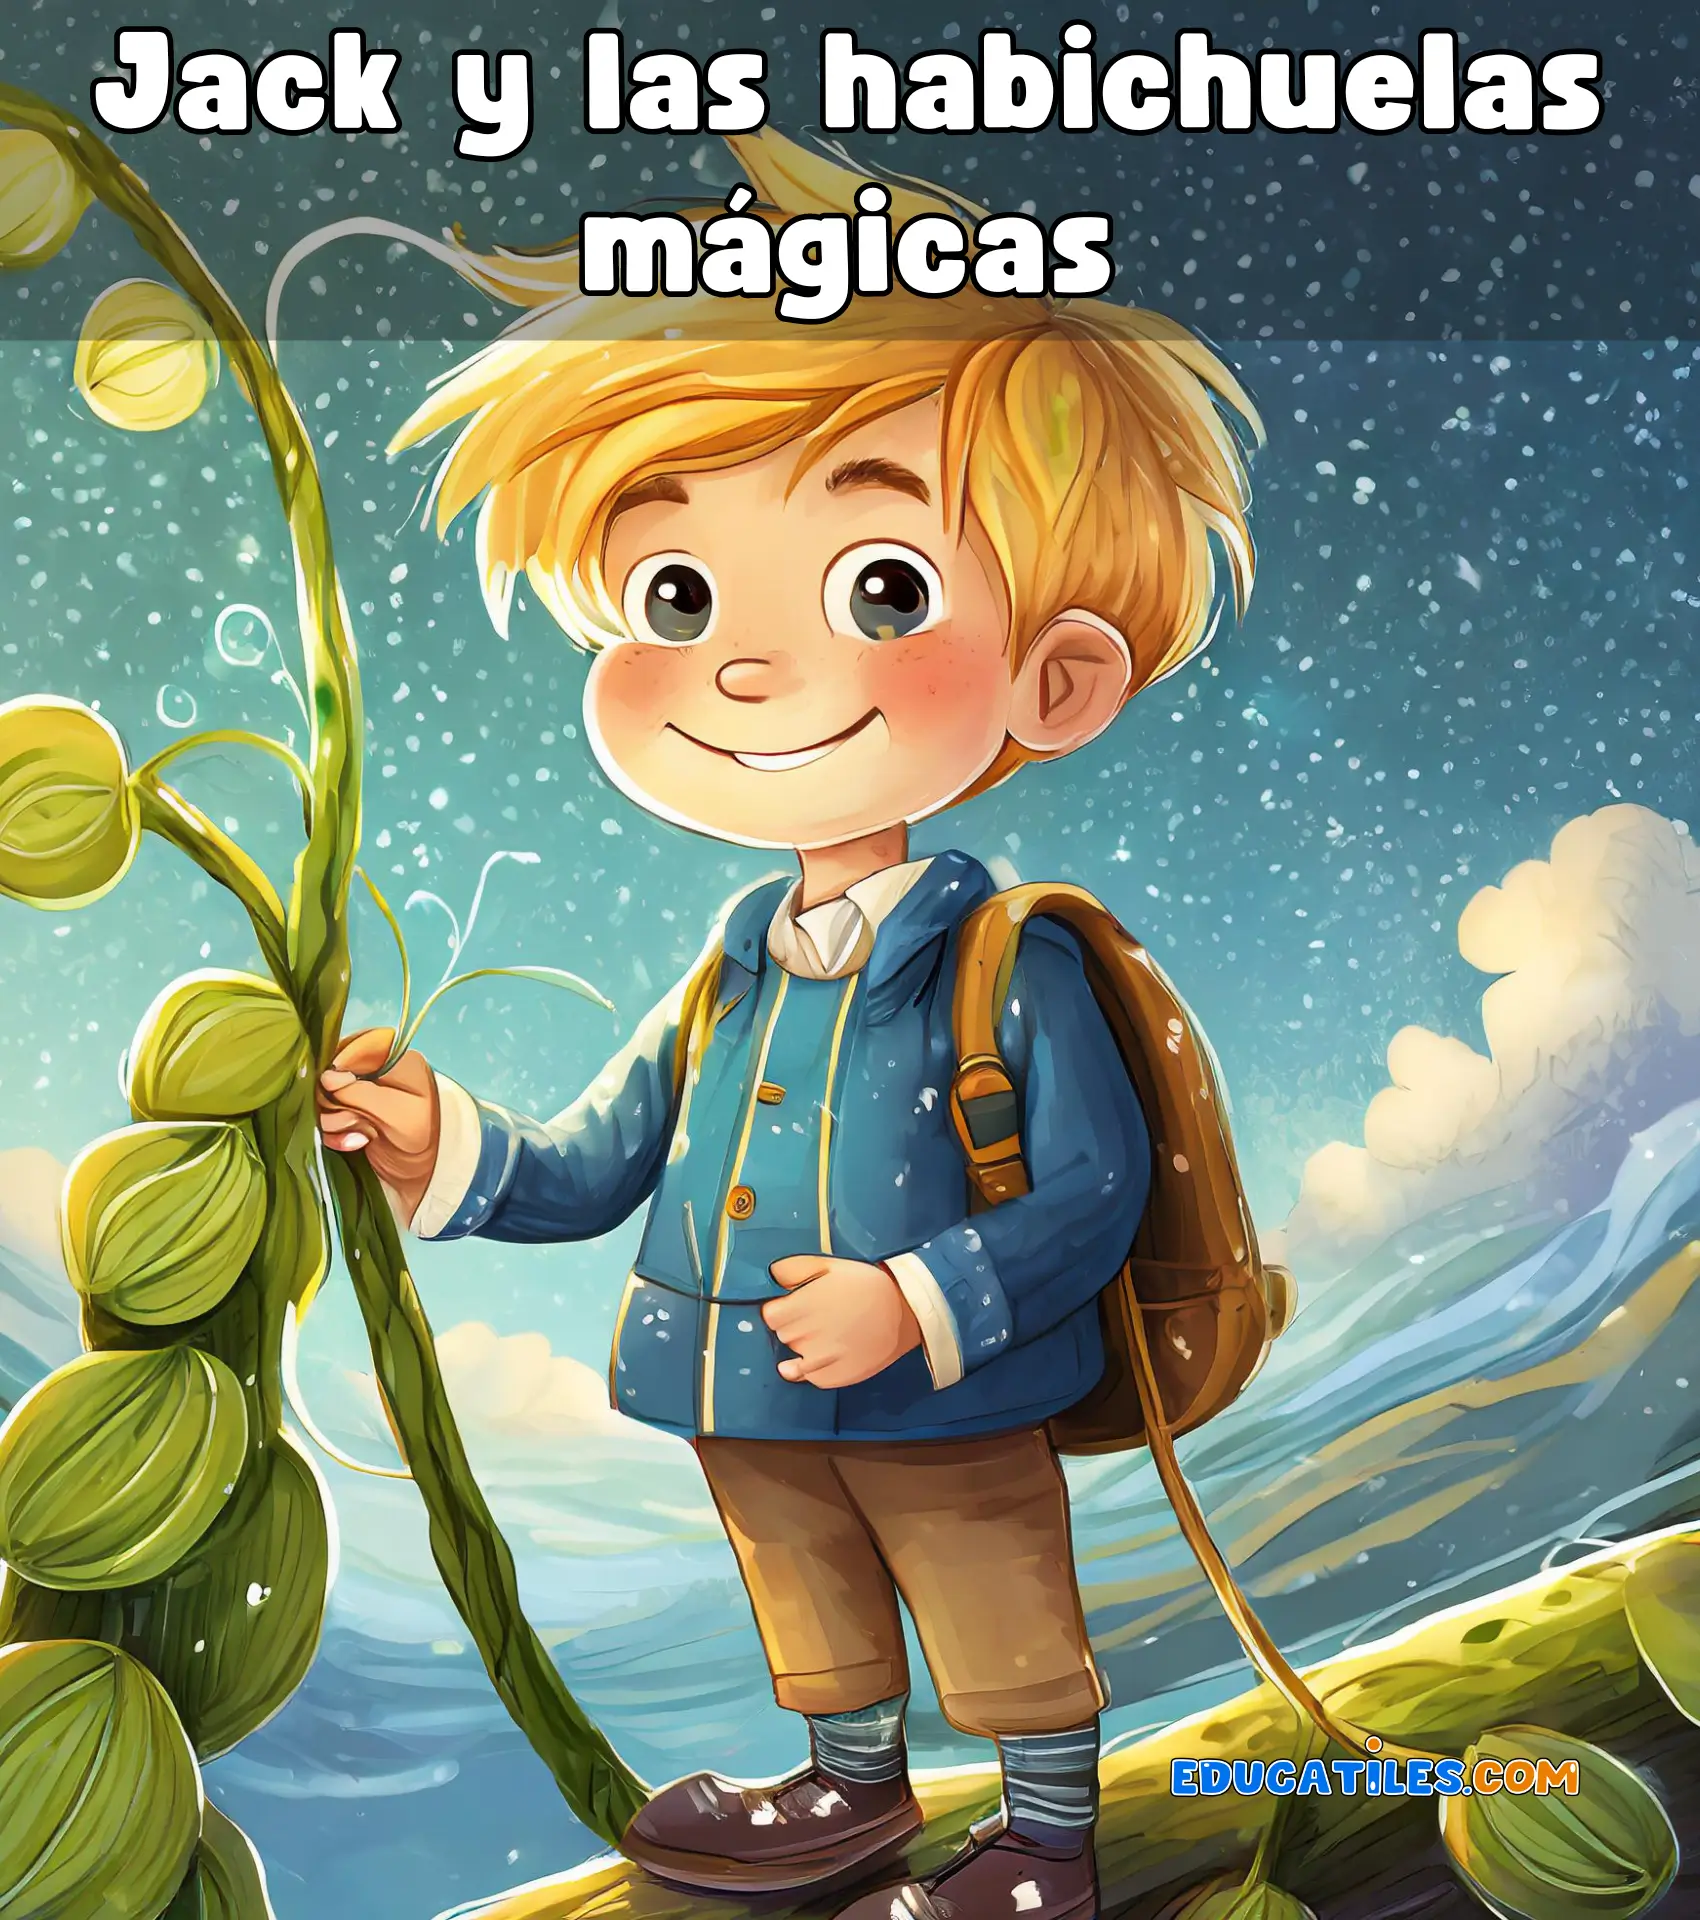 Cuentos cortos para niños de 3 a 5 años - Cuentos en español, Materiales  educativos, Historias cortas para niños y Orientación familiar